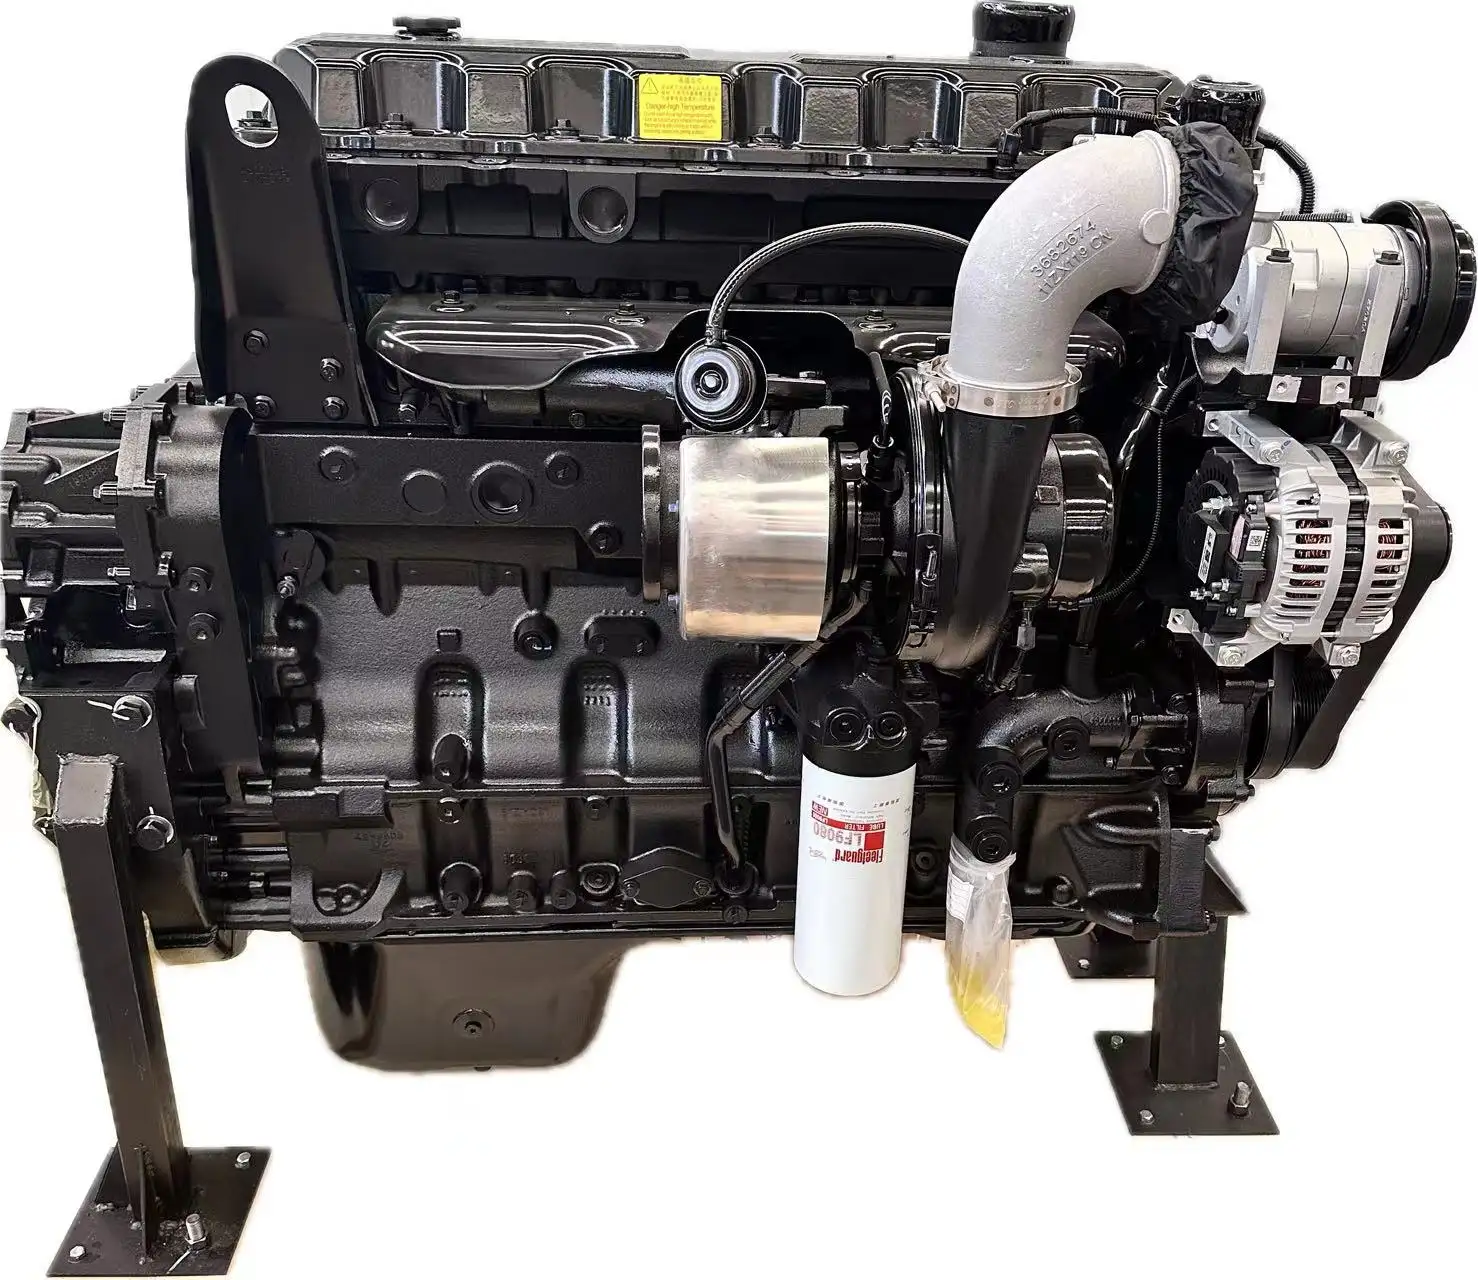 Produits populaires Le moteur diesel Cum mins QSX15 est un système de carburant fonctionnant en continu très efficace